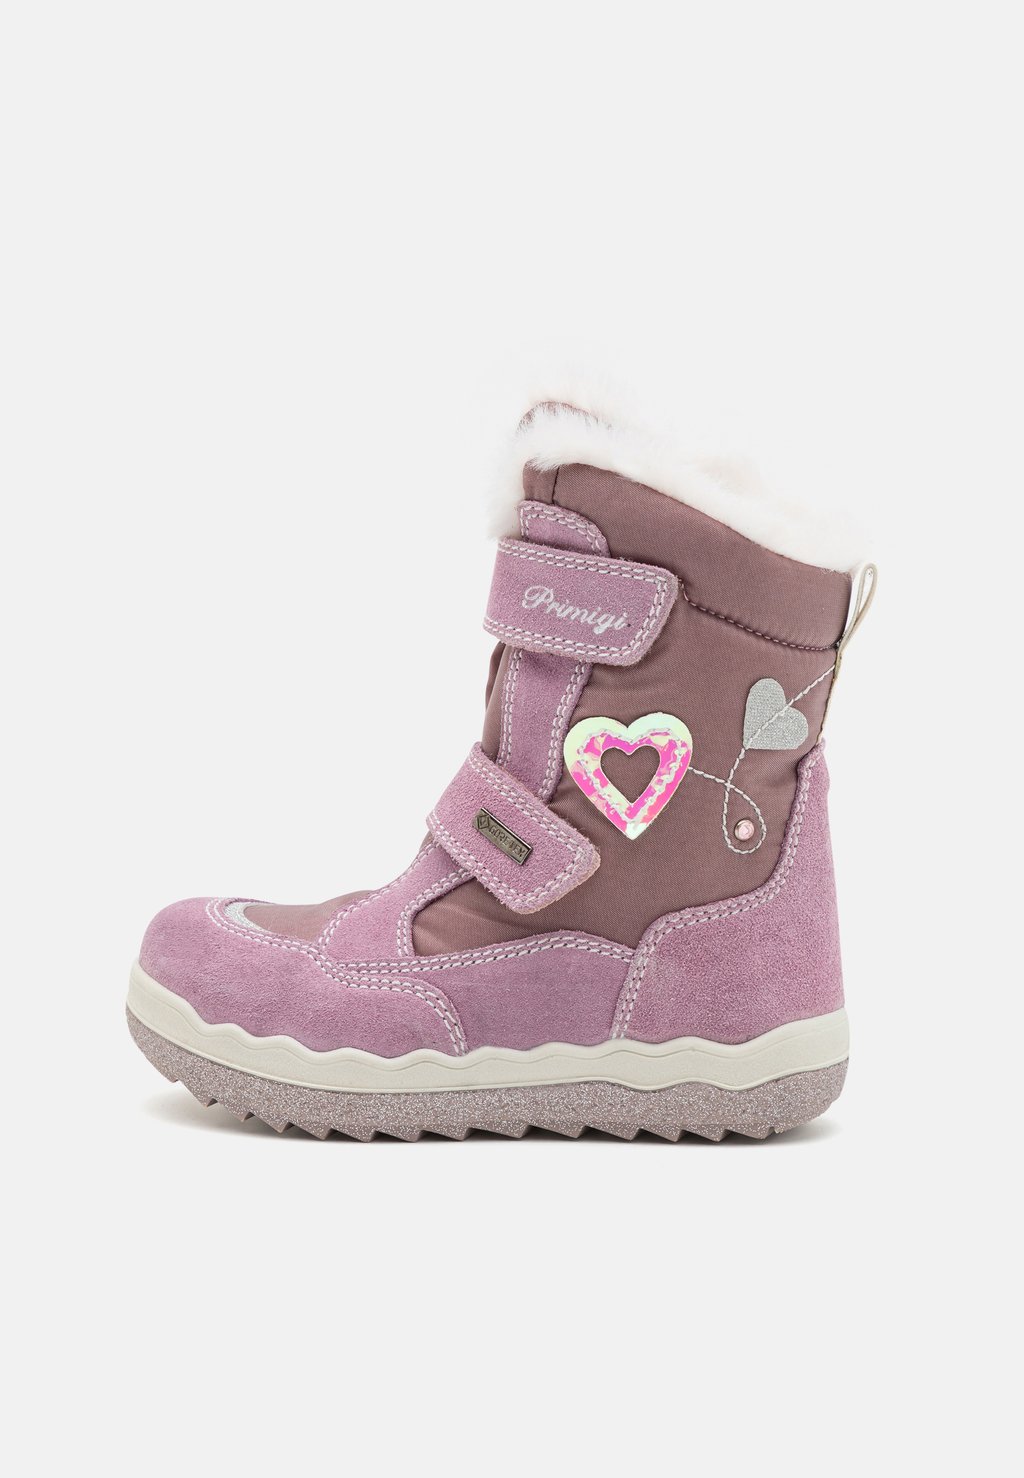 Снегоступы/зимние ботинки Primigi, цвет pink/chiffon